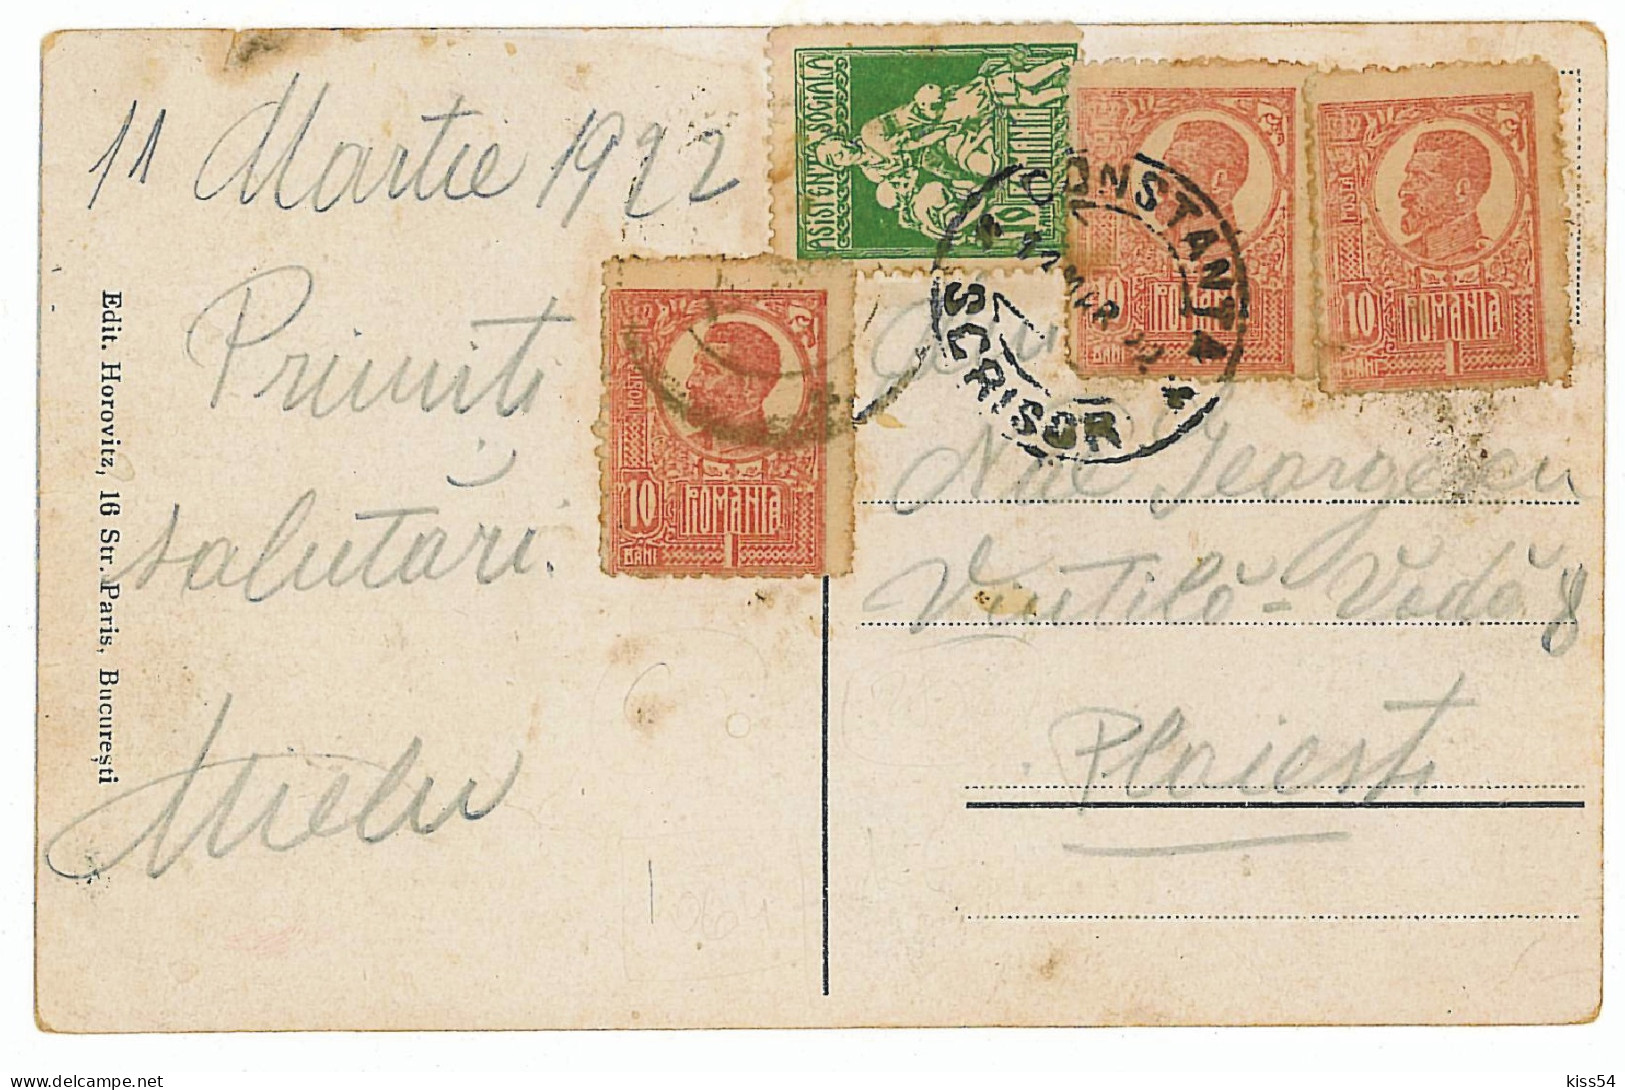 RO 81 - 2858  CONSTANTA, Statuia Lui Ovidiu, Market, Romania - Old Postcard - Used - 1922 - Roumanie